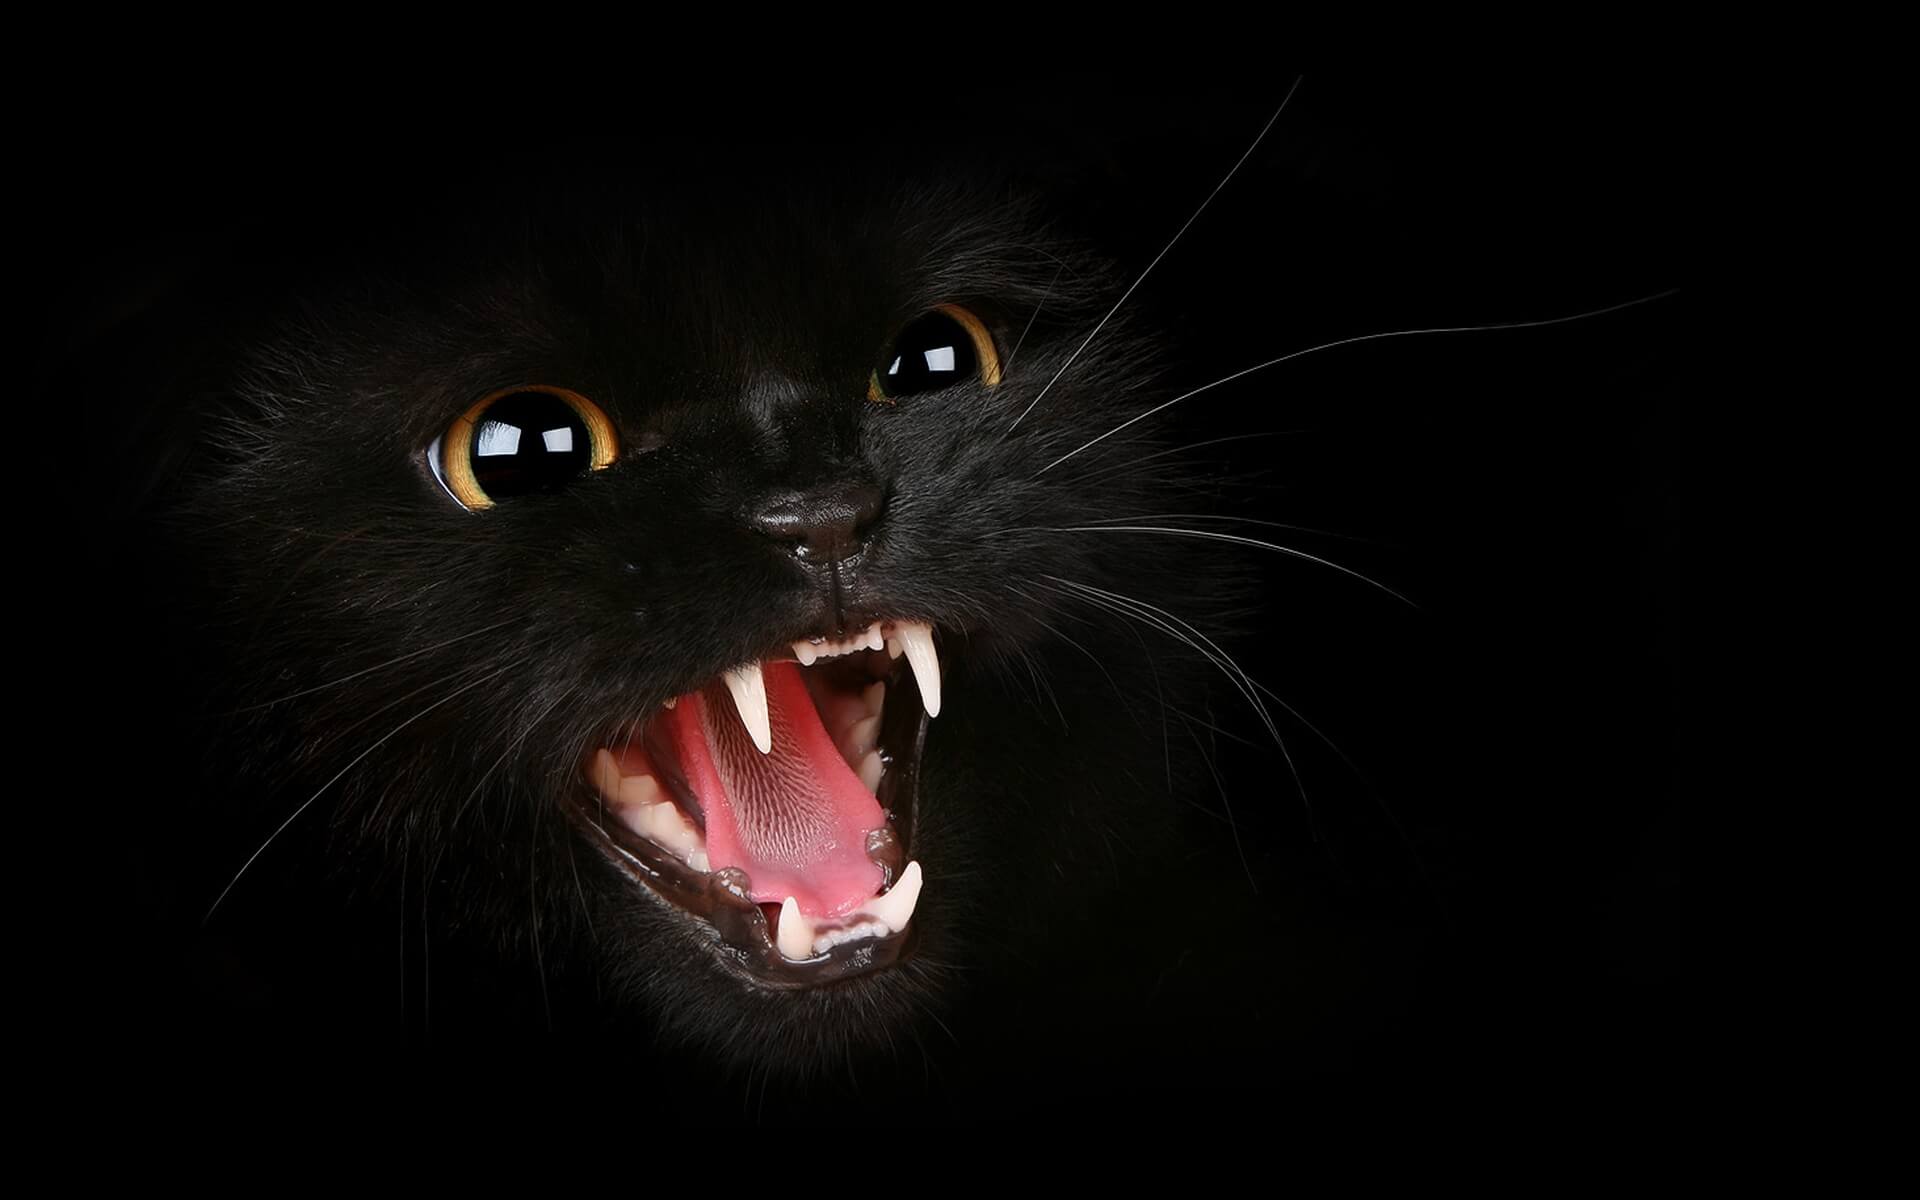 الحقيقة وراء القطط السوداء والجن "بين الحقيقة والخرافة"